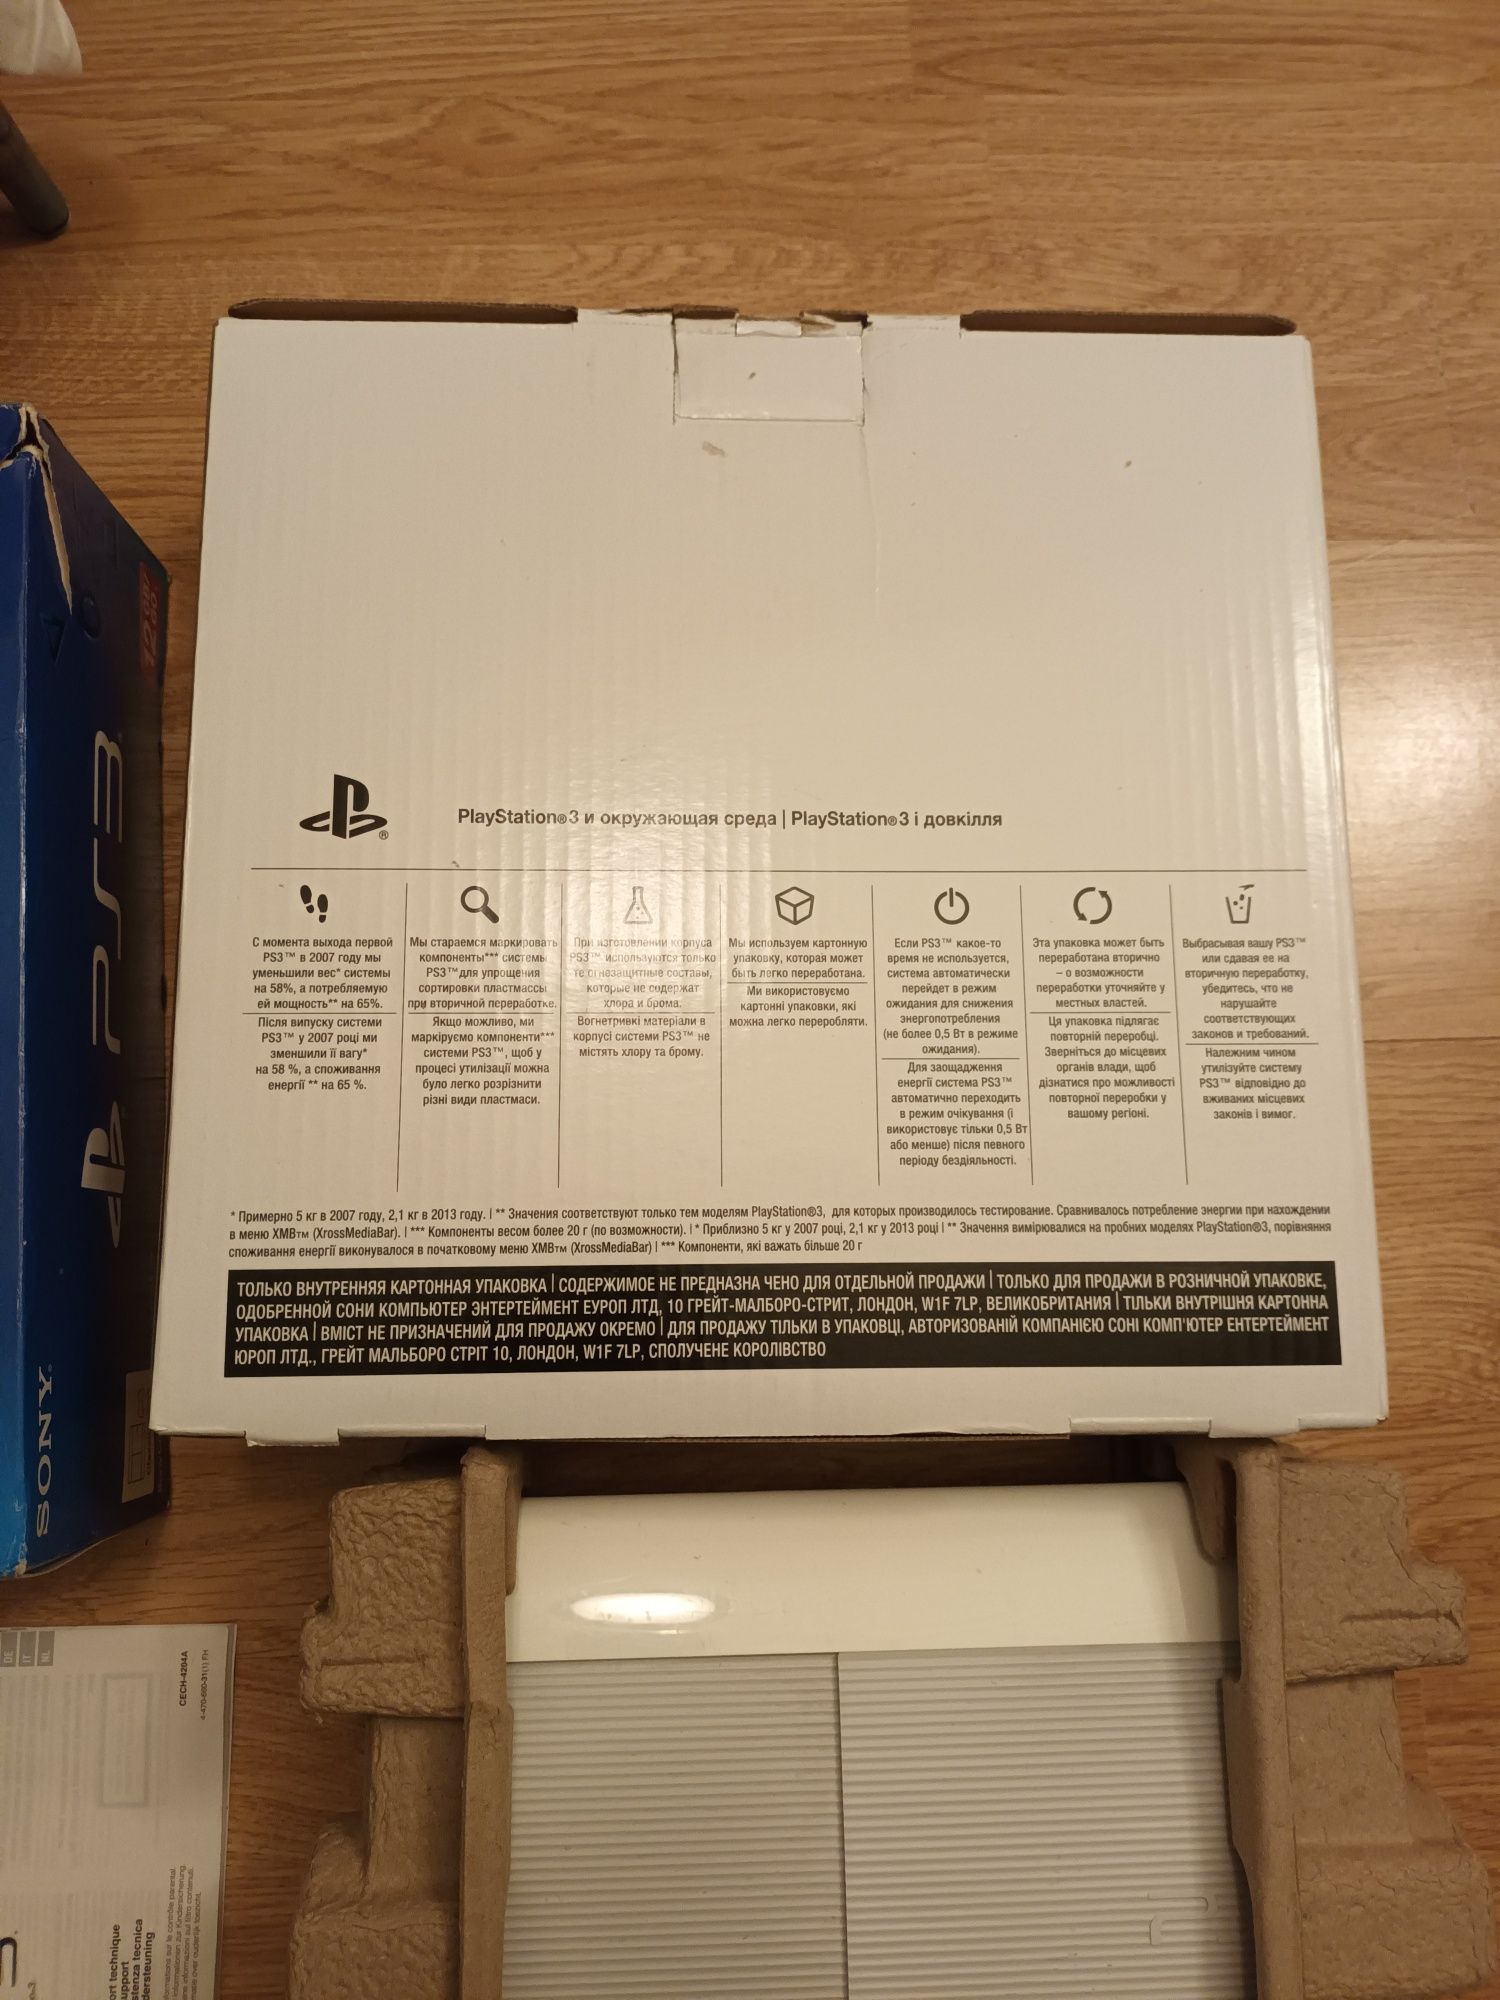 Sprzedam konsolę PlayStation 3 limitowaną białą wraz z padem ps3